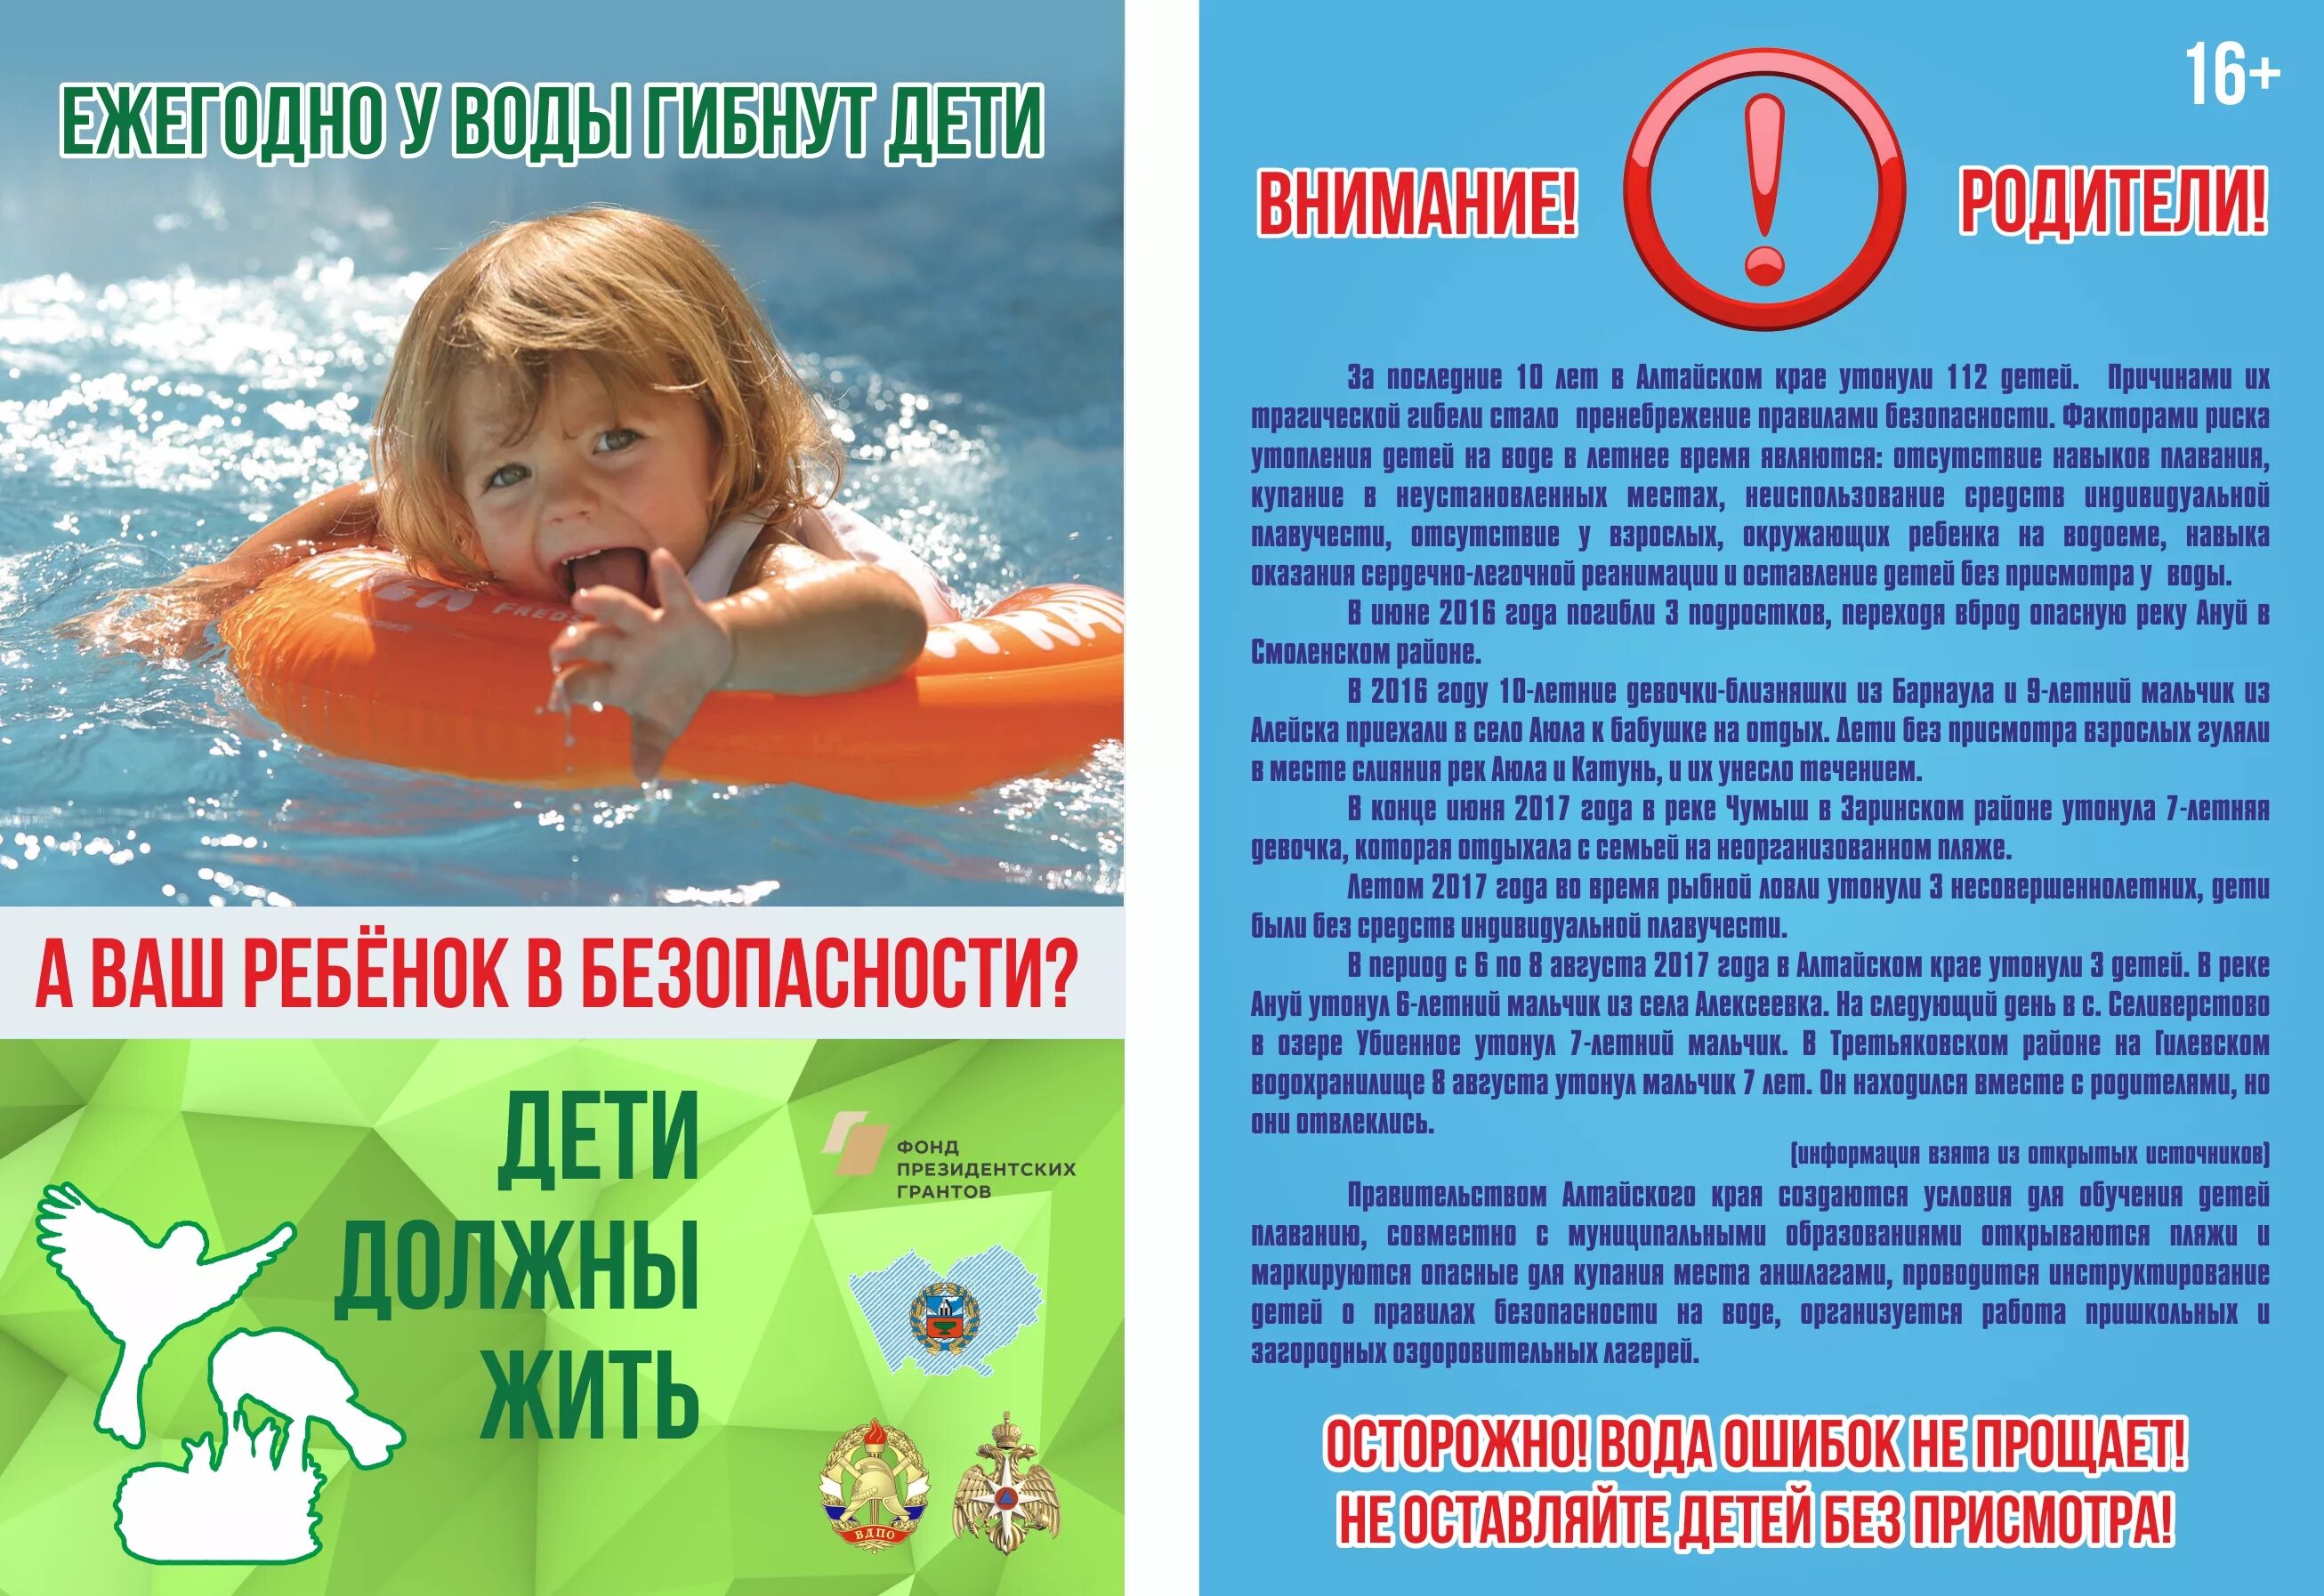 Купаться правила. Безопасность на водоемах летом для детей. Безопасность на вордоемахдля детей. Безопасность на воде для детей. Безопасность детей на водоемах в летний период.